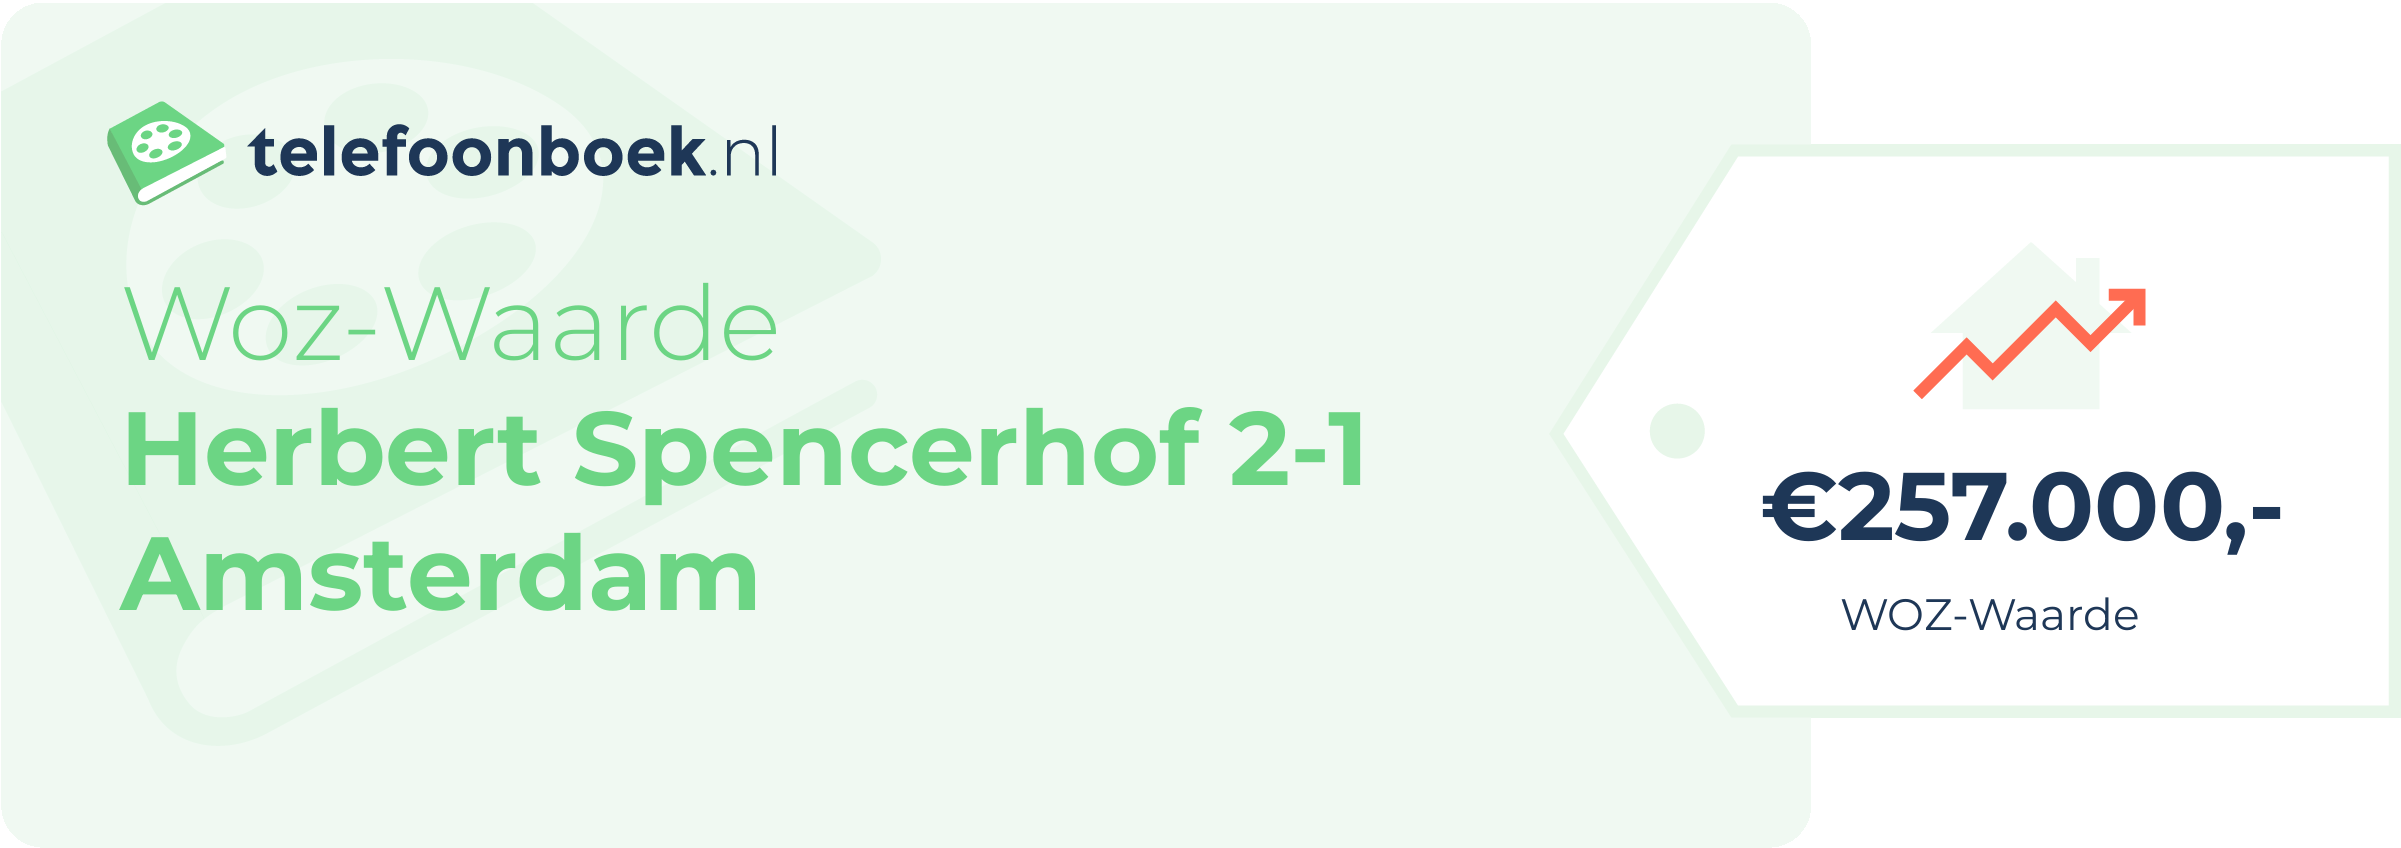 WOZ-waarde Herbert Spencerhof 2-1 Amsterdam